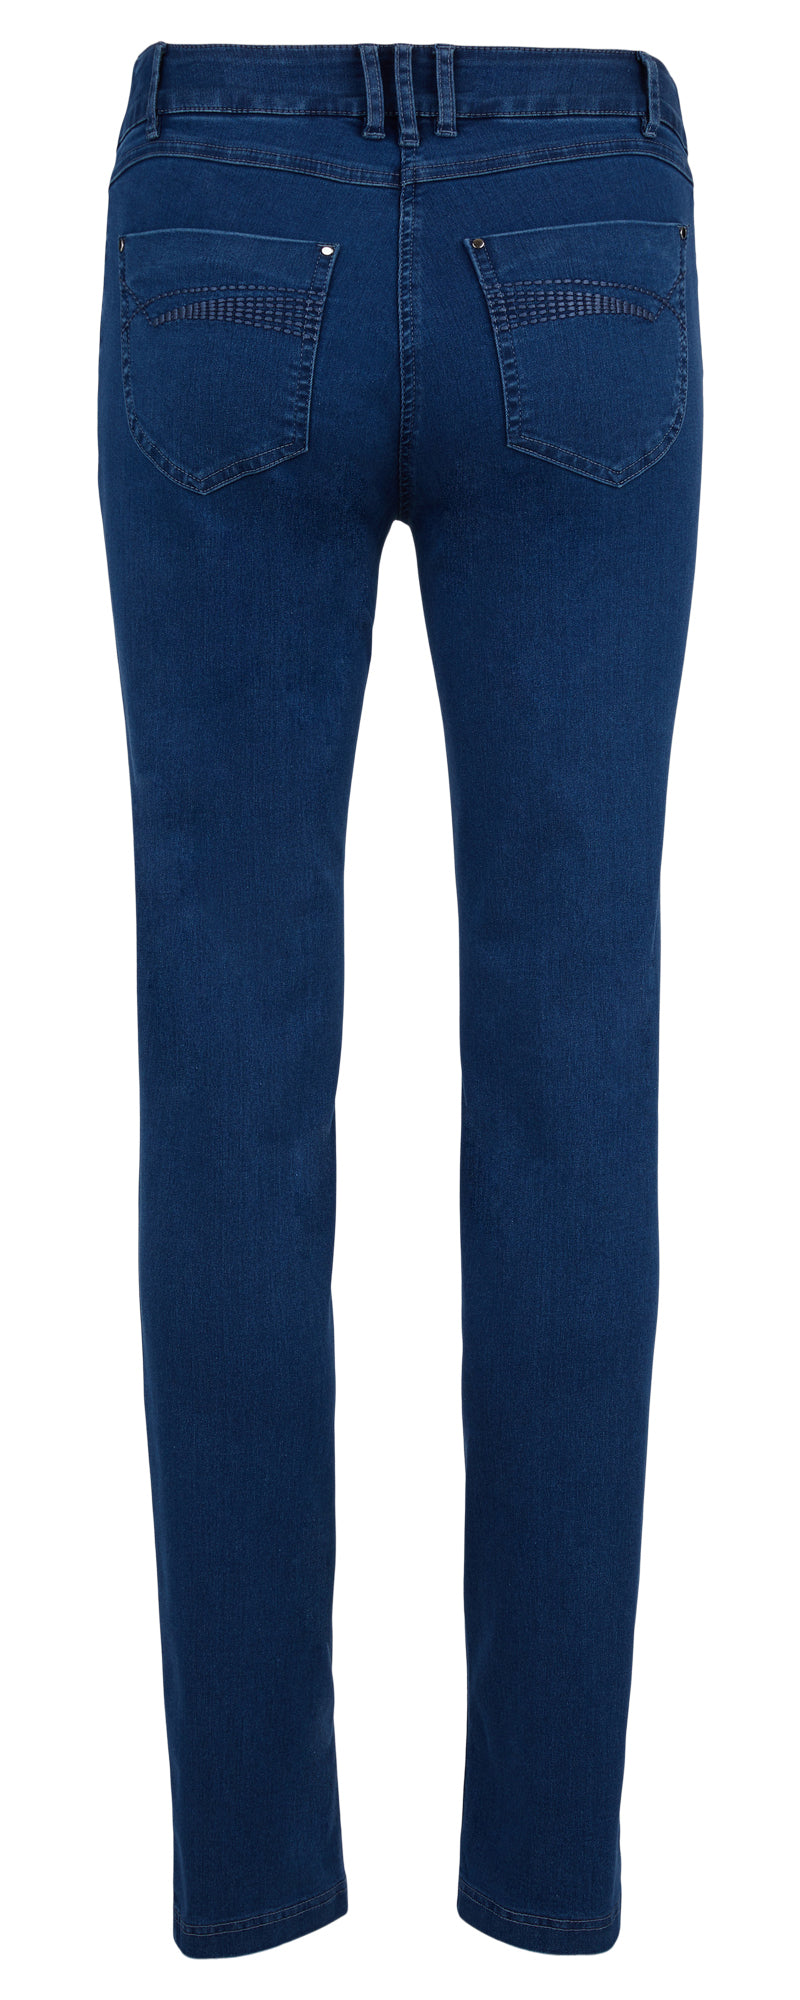 Robell Elena Jeans in Denim Blue